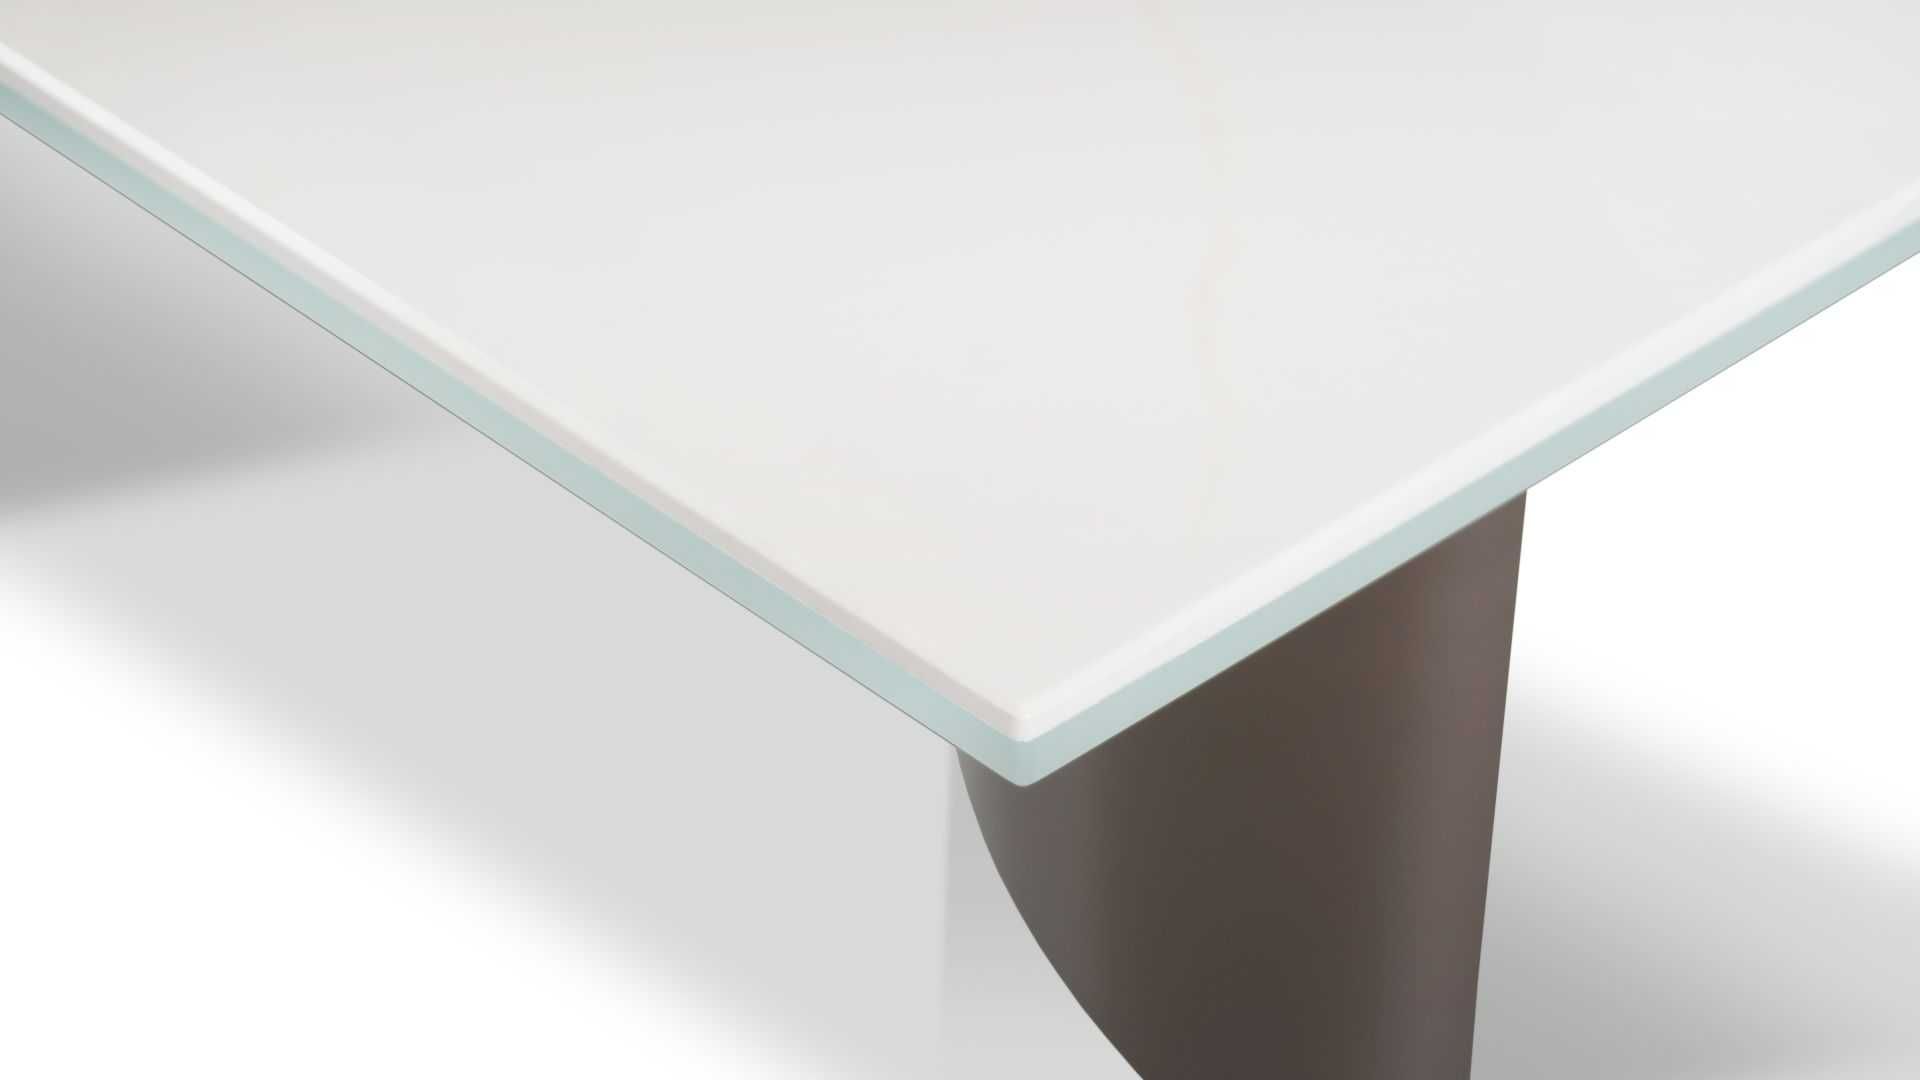 Stół ARENA blat ze spieku kwarcowego, podstawa brąz 300 cm x 120 cm